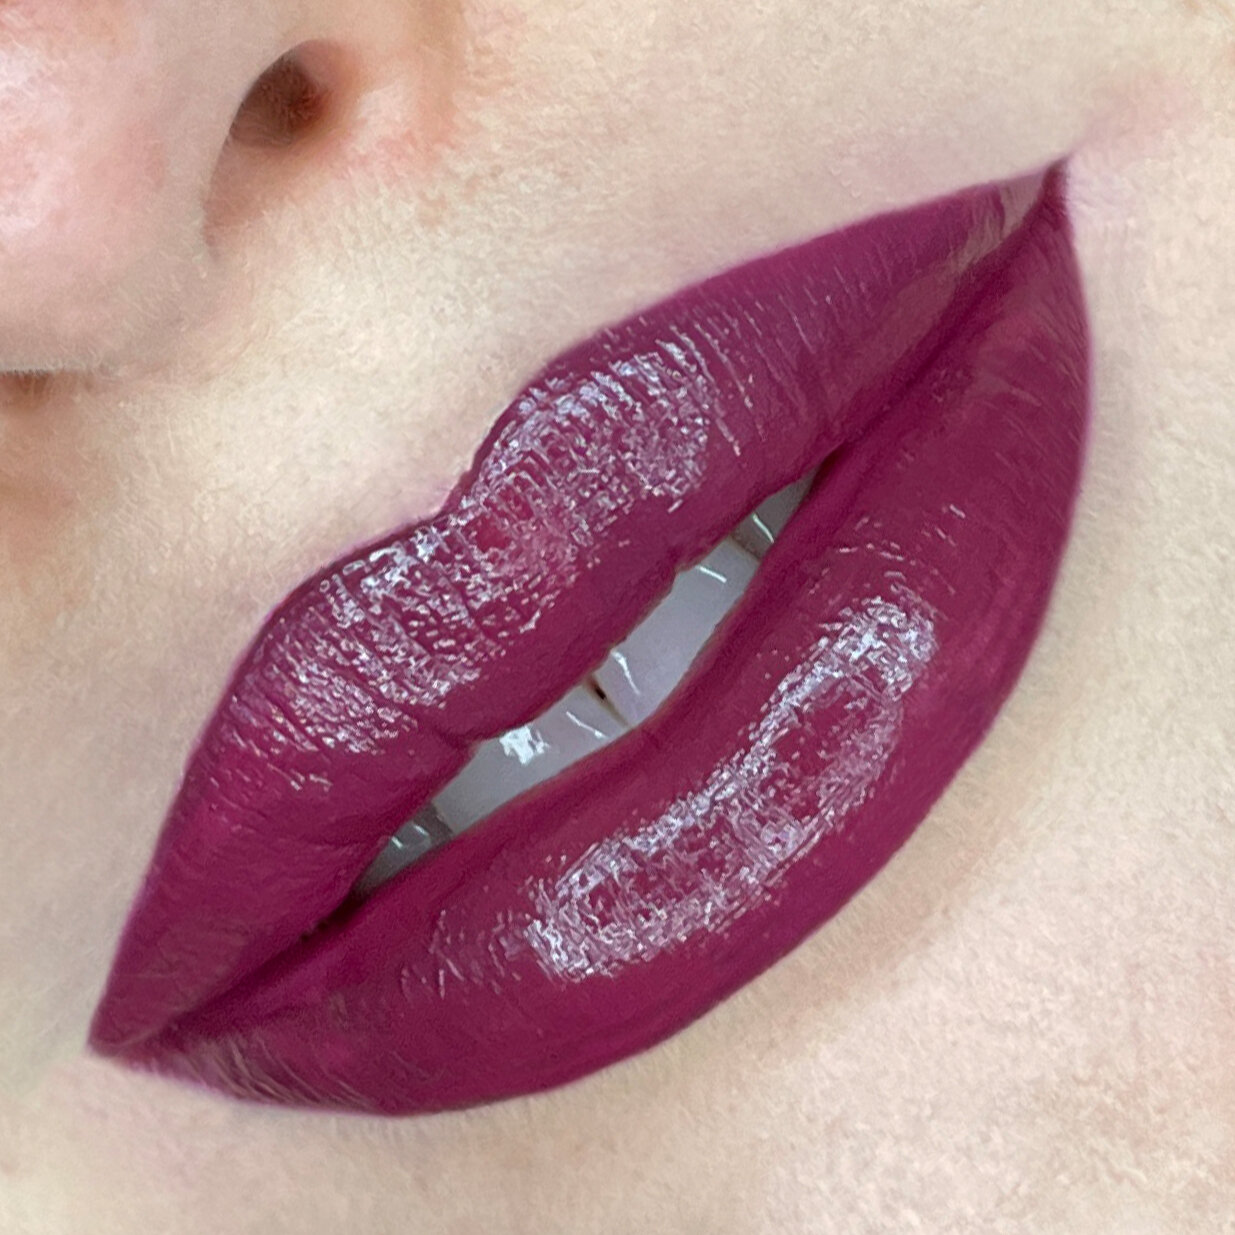 lips_matte-lipstick_154.jpg